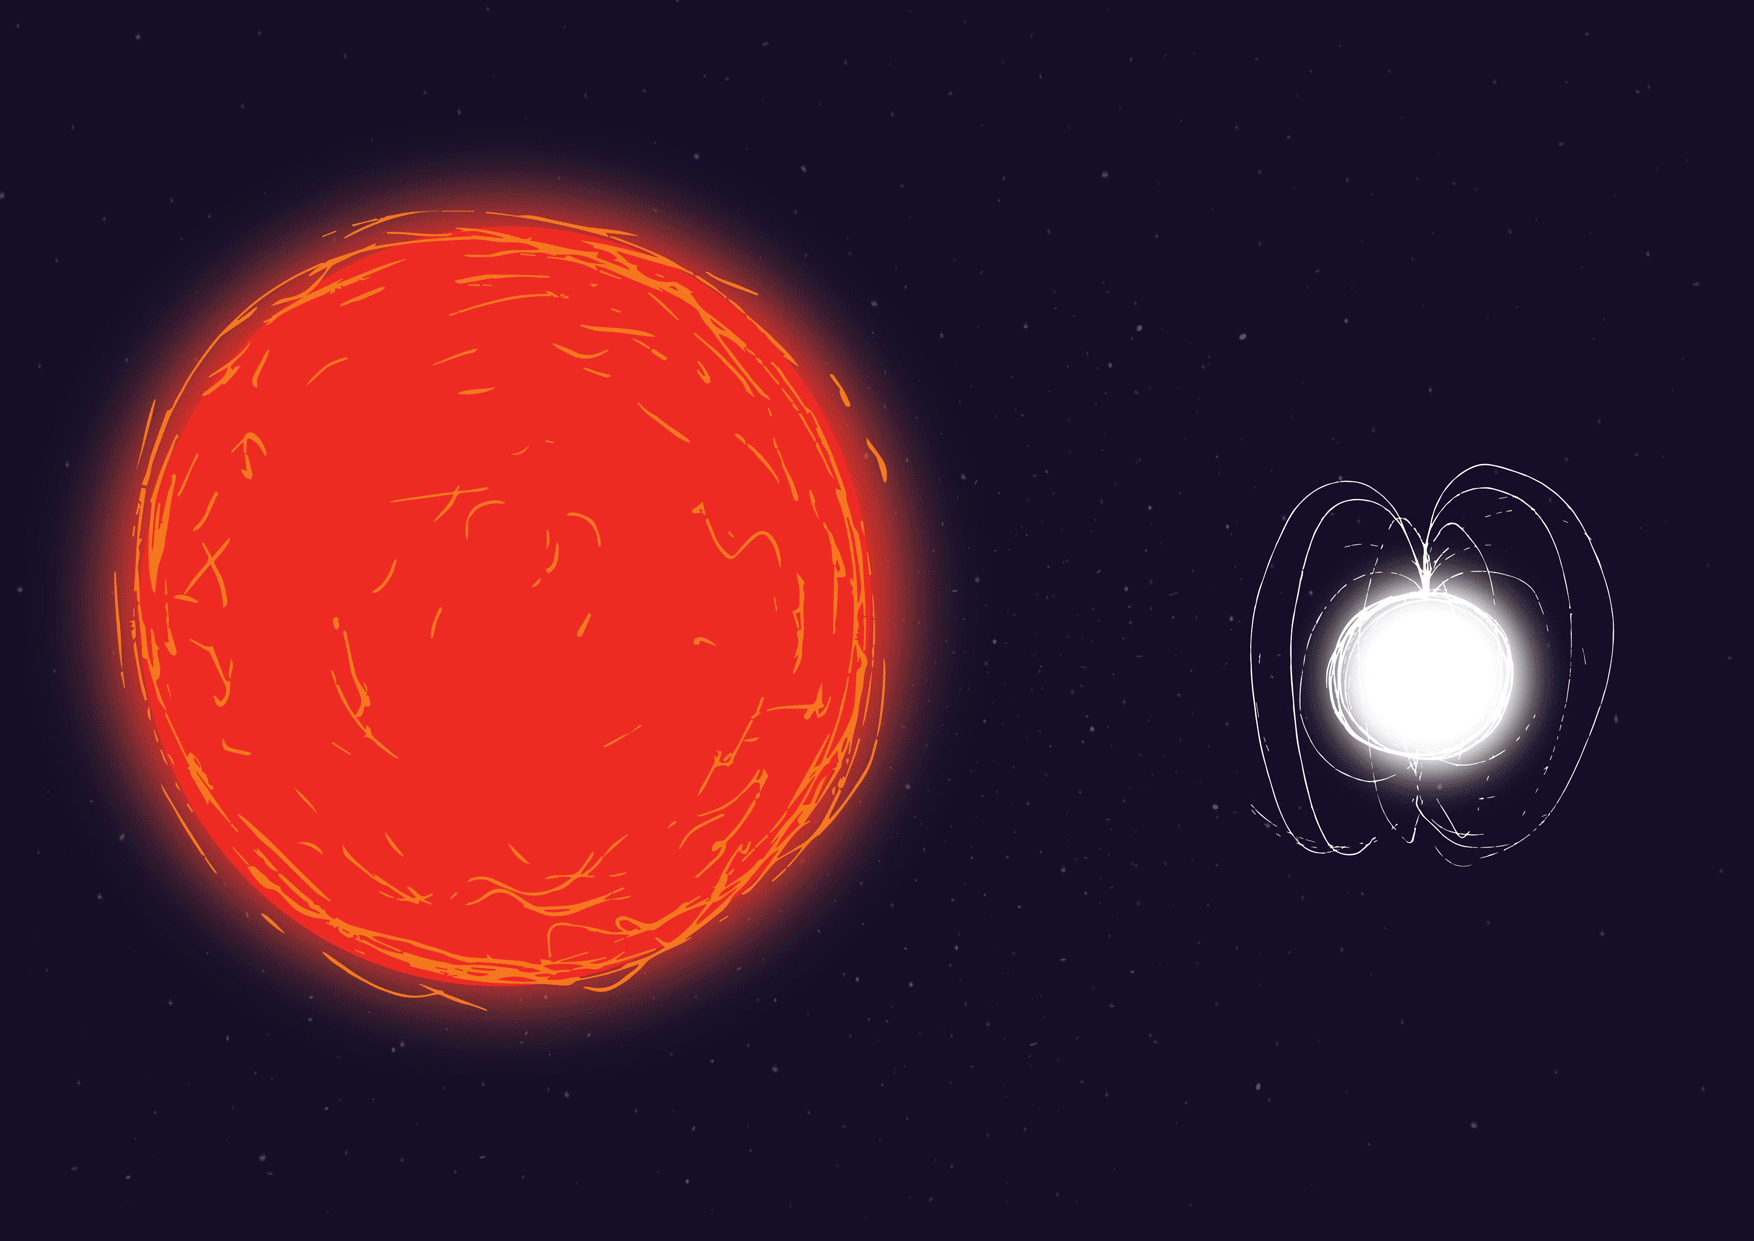 Vztah mezi červeným obrem a neutronovou hvězdou